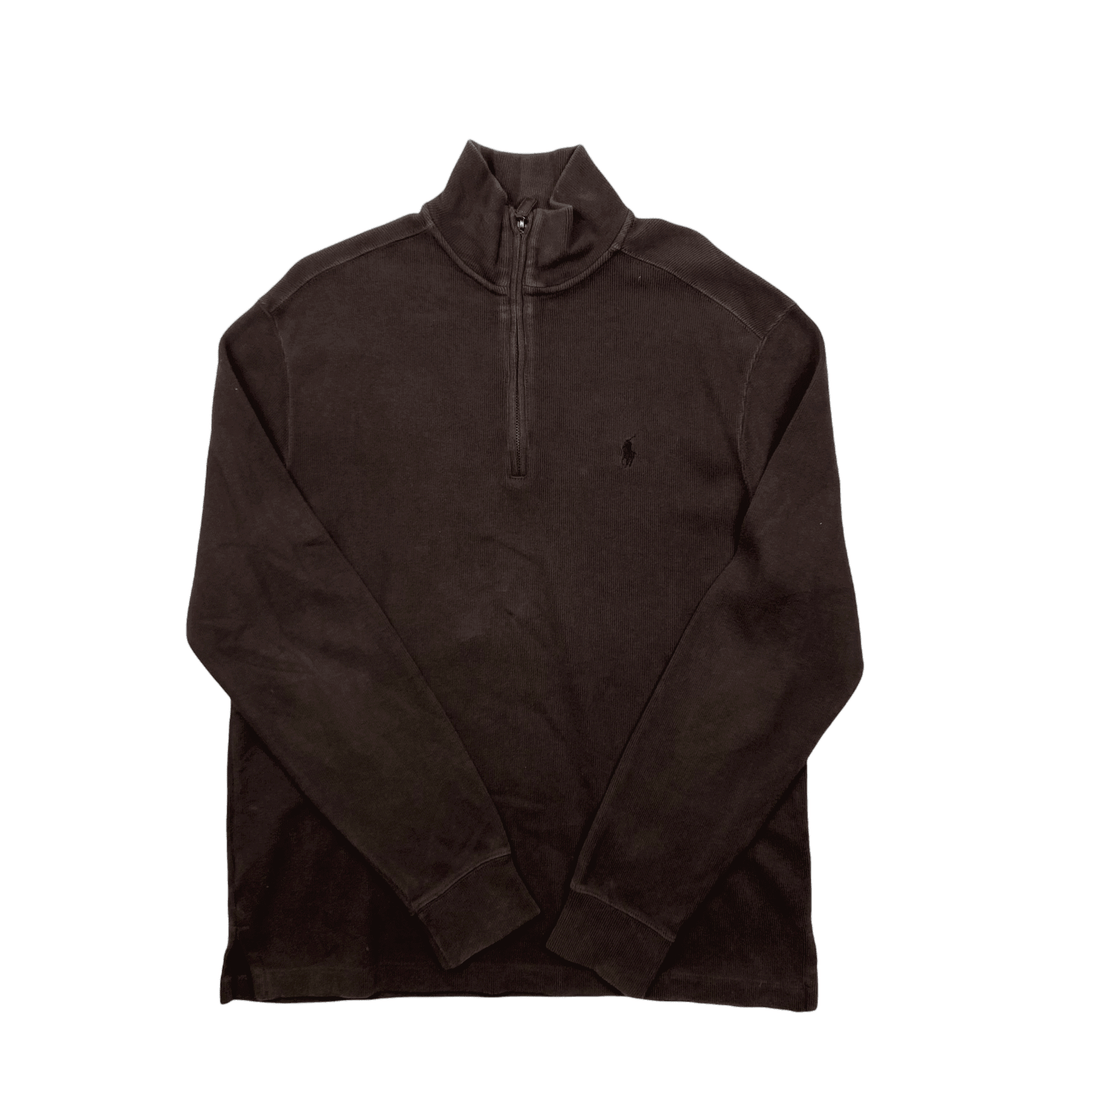 Vintage 90s Brown Polo Ralph Lauren Quarter Zip Sweatshirt - Small - The Streetwear Studio